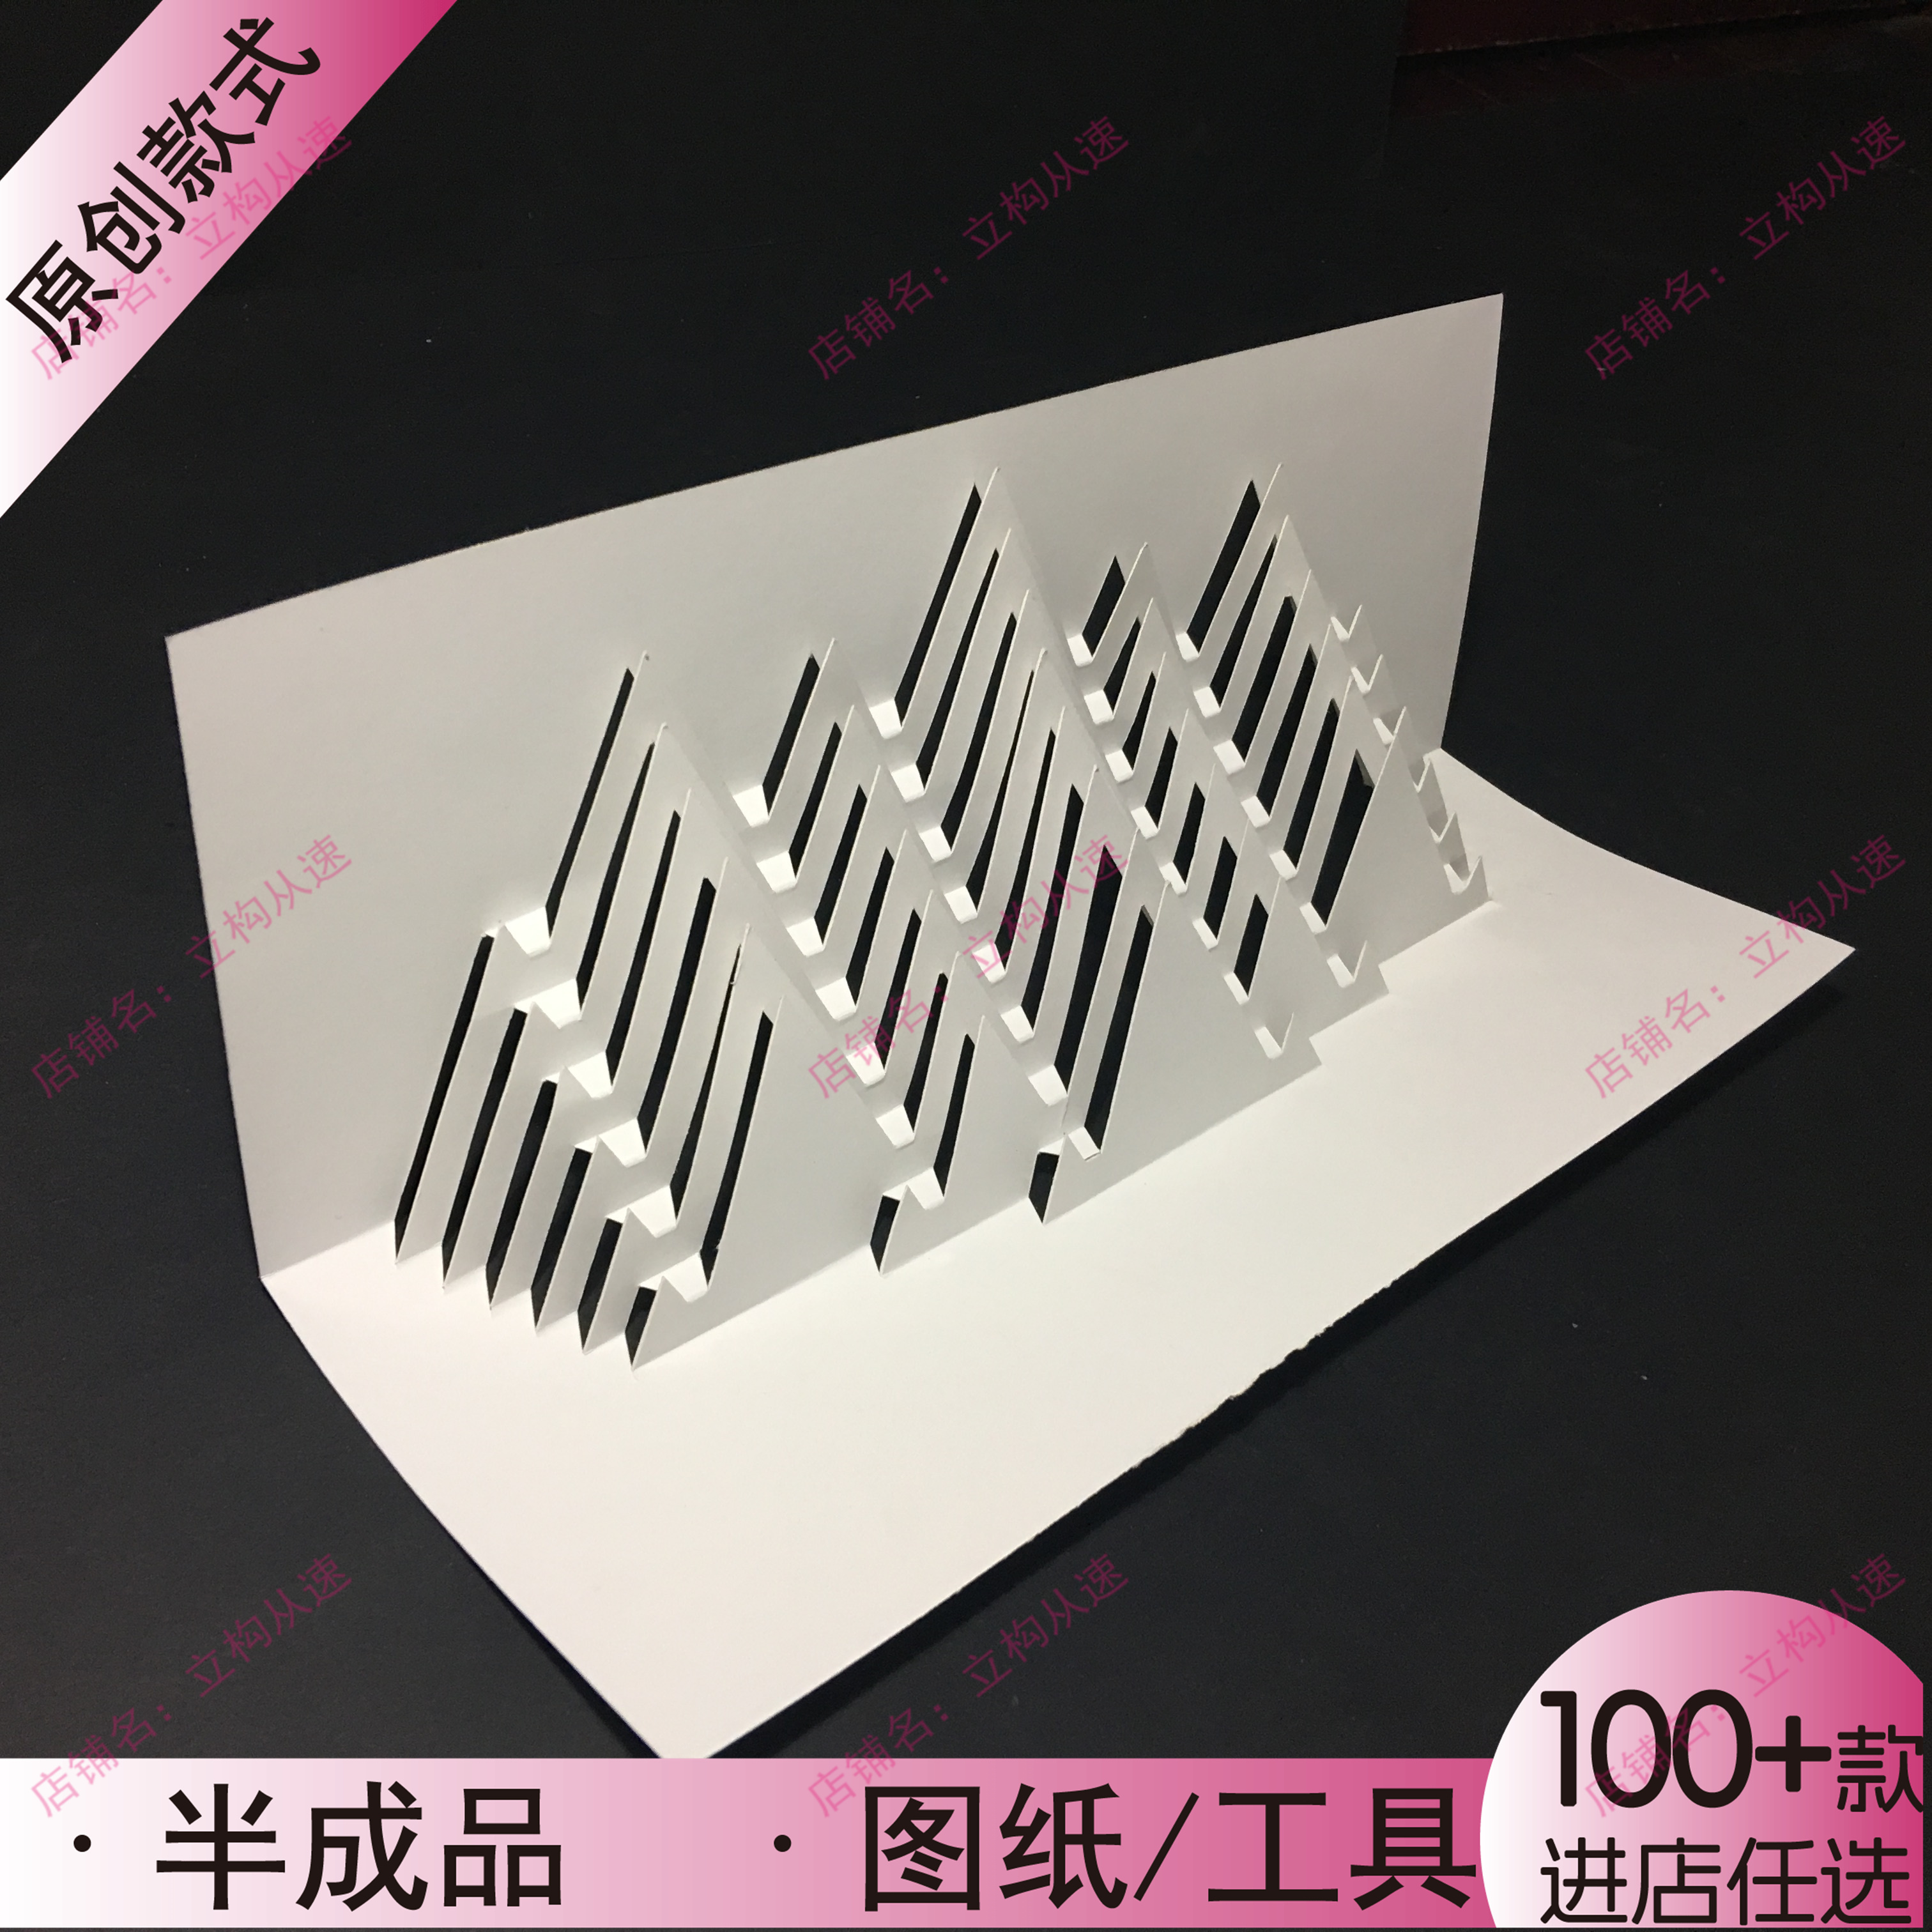 【3D立体贺卡】立体构成山峰图案三角形叠加卡纸折纸剪纸速成作业